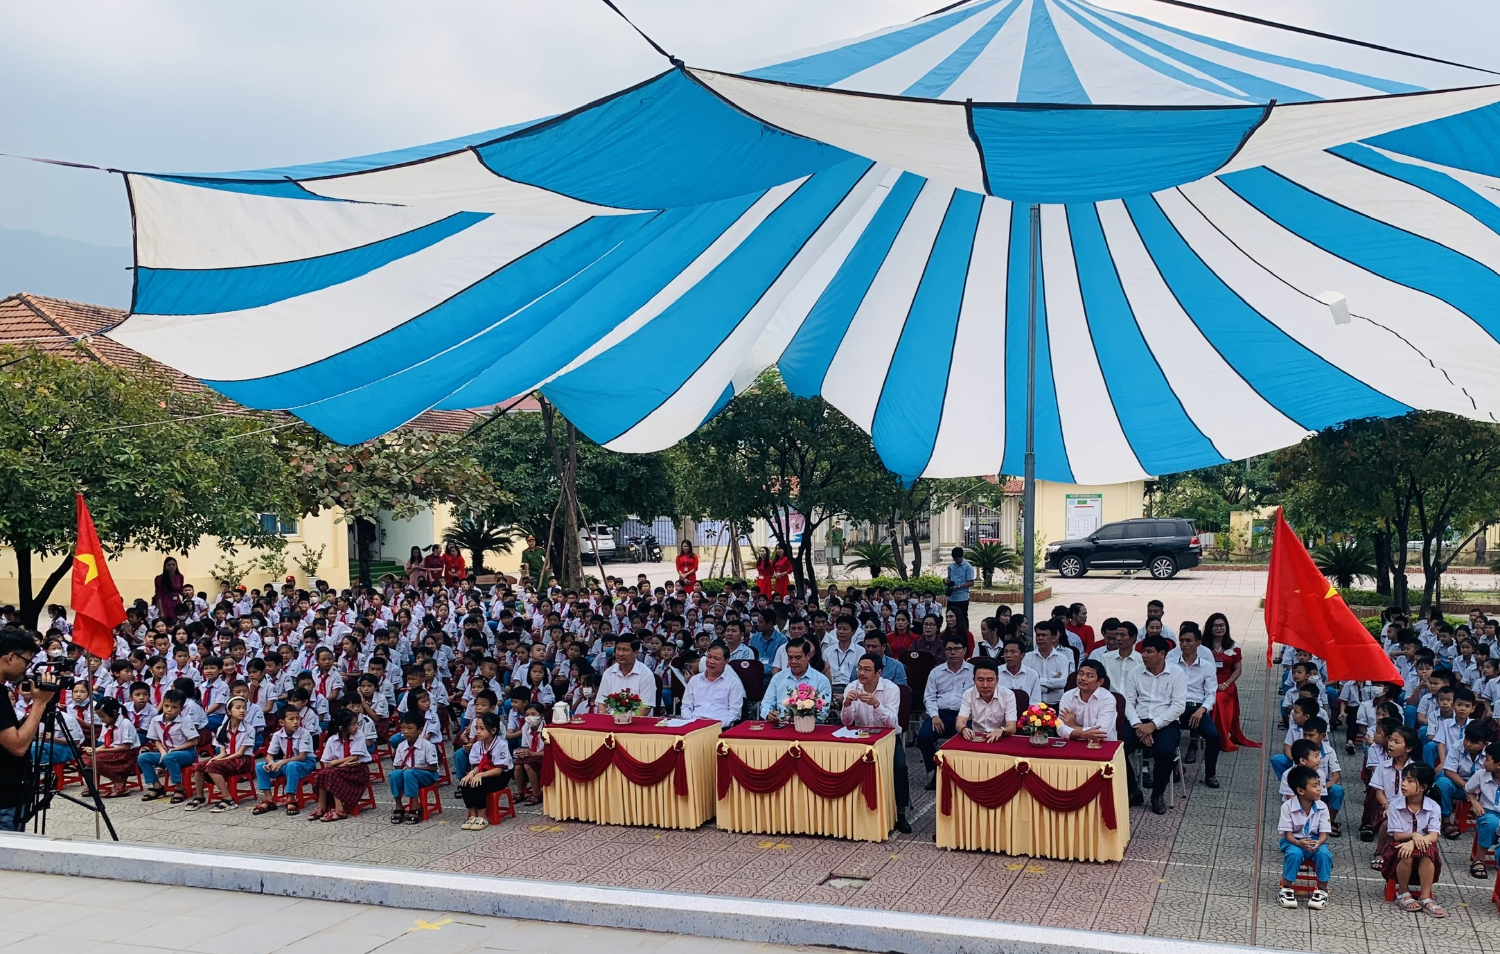 Trường Tiểu học Kỳ Phương phối hợp với công ty TNHH GrowMax, báo Nông nghiệp Việt Nam trao tặng 30 suất học bổng cho 30 em học sinh nghèo vượt khó